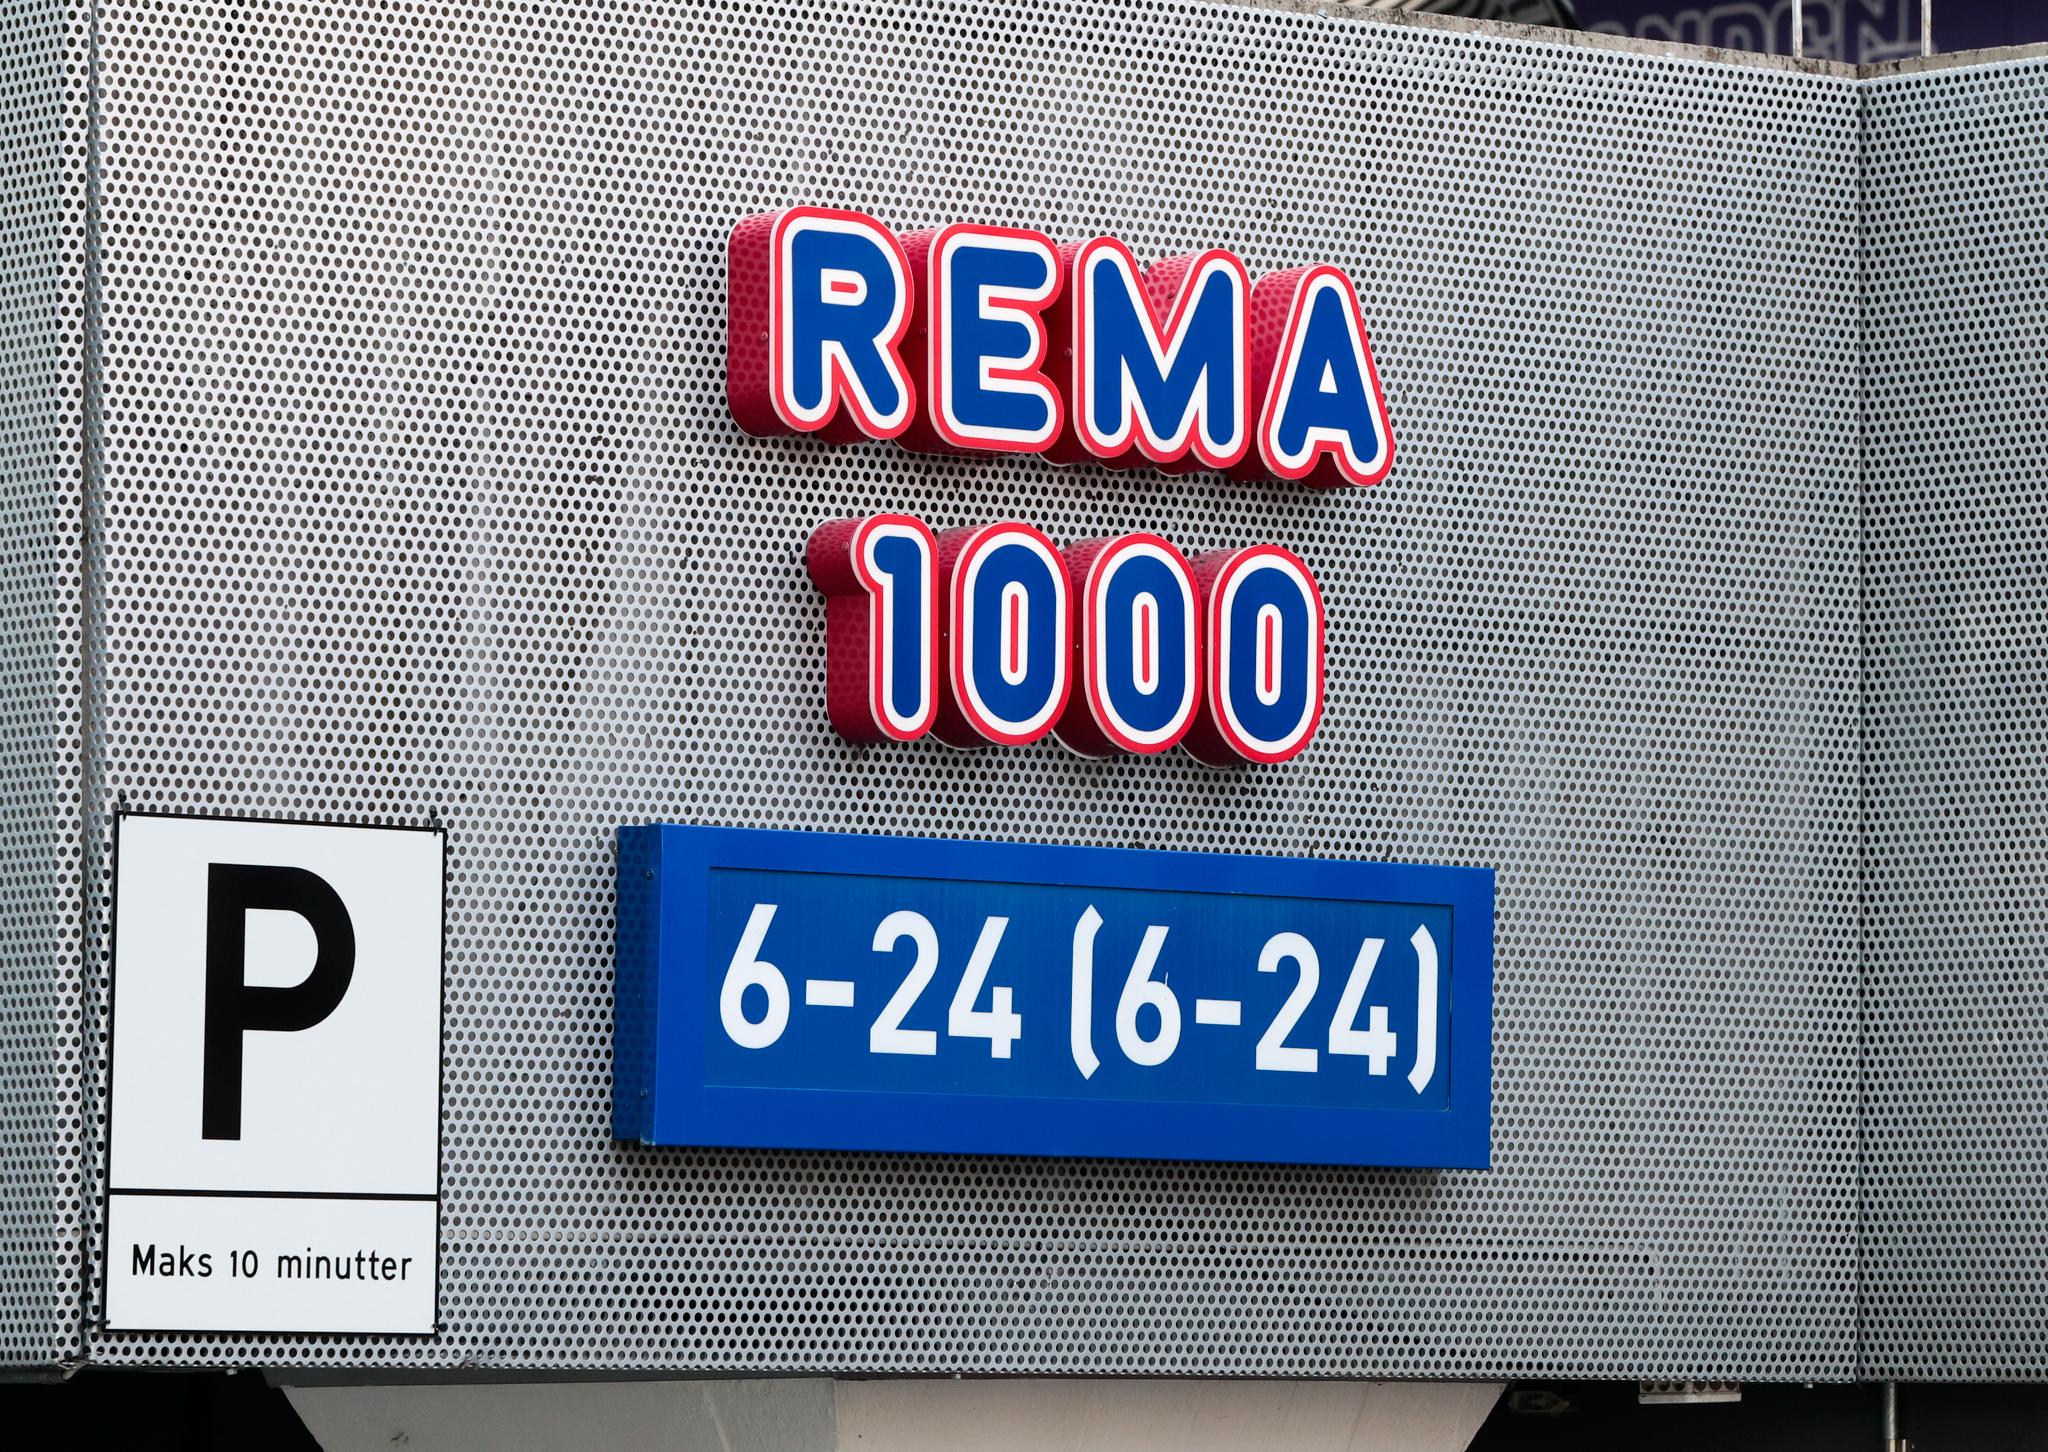 Rema 1000 taper i konkurransen mot Kiwi og Extra, viser nye tall.